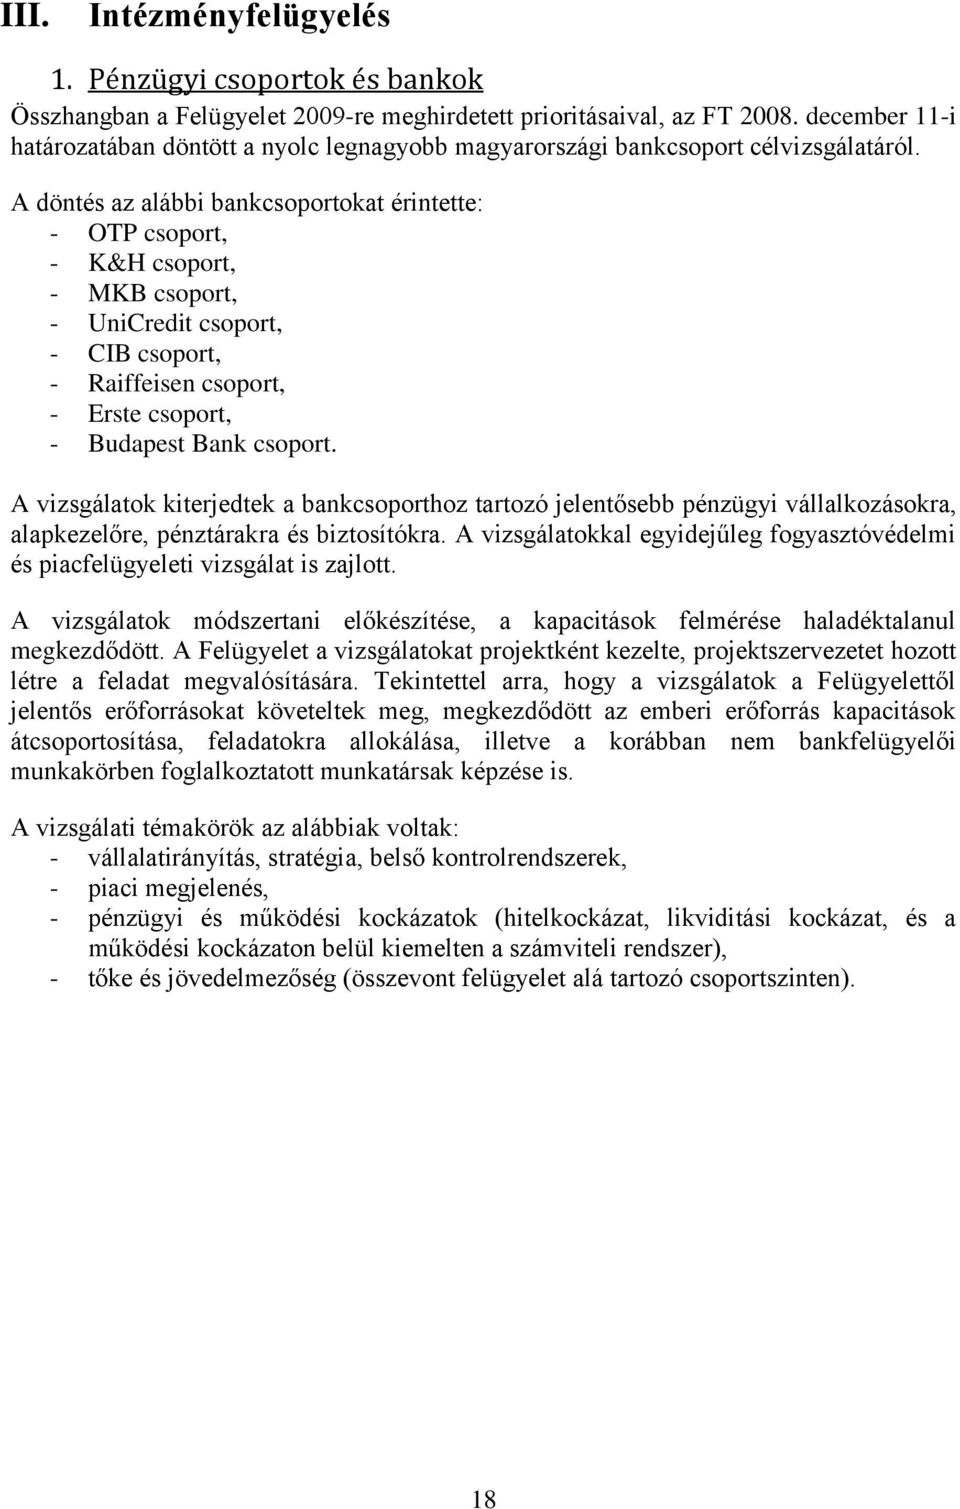 A döntés az alábbi bankcsoportokat érintette: - OTP csoport, - K&H csoport, - MKB csoport, - UniCredit csoport, - CIB csoport, - Raiffeisen csoport, - Erste csoport, - Budapest Bank csoport.